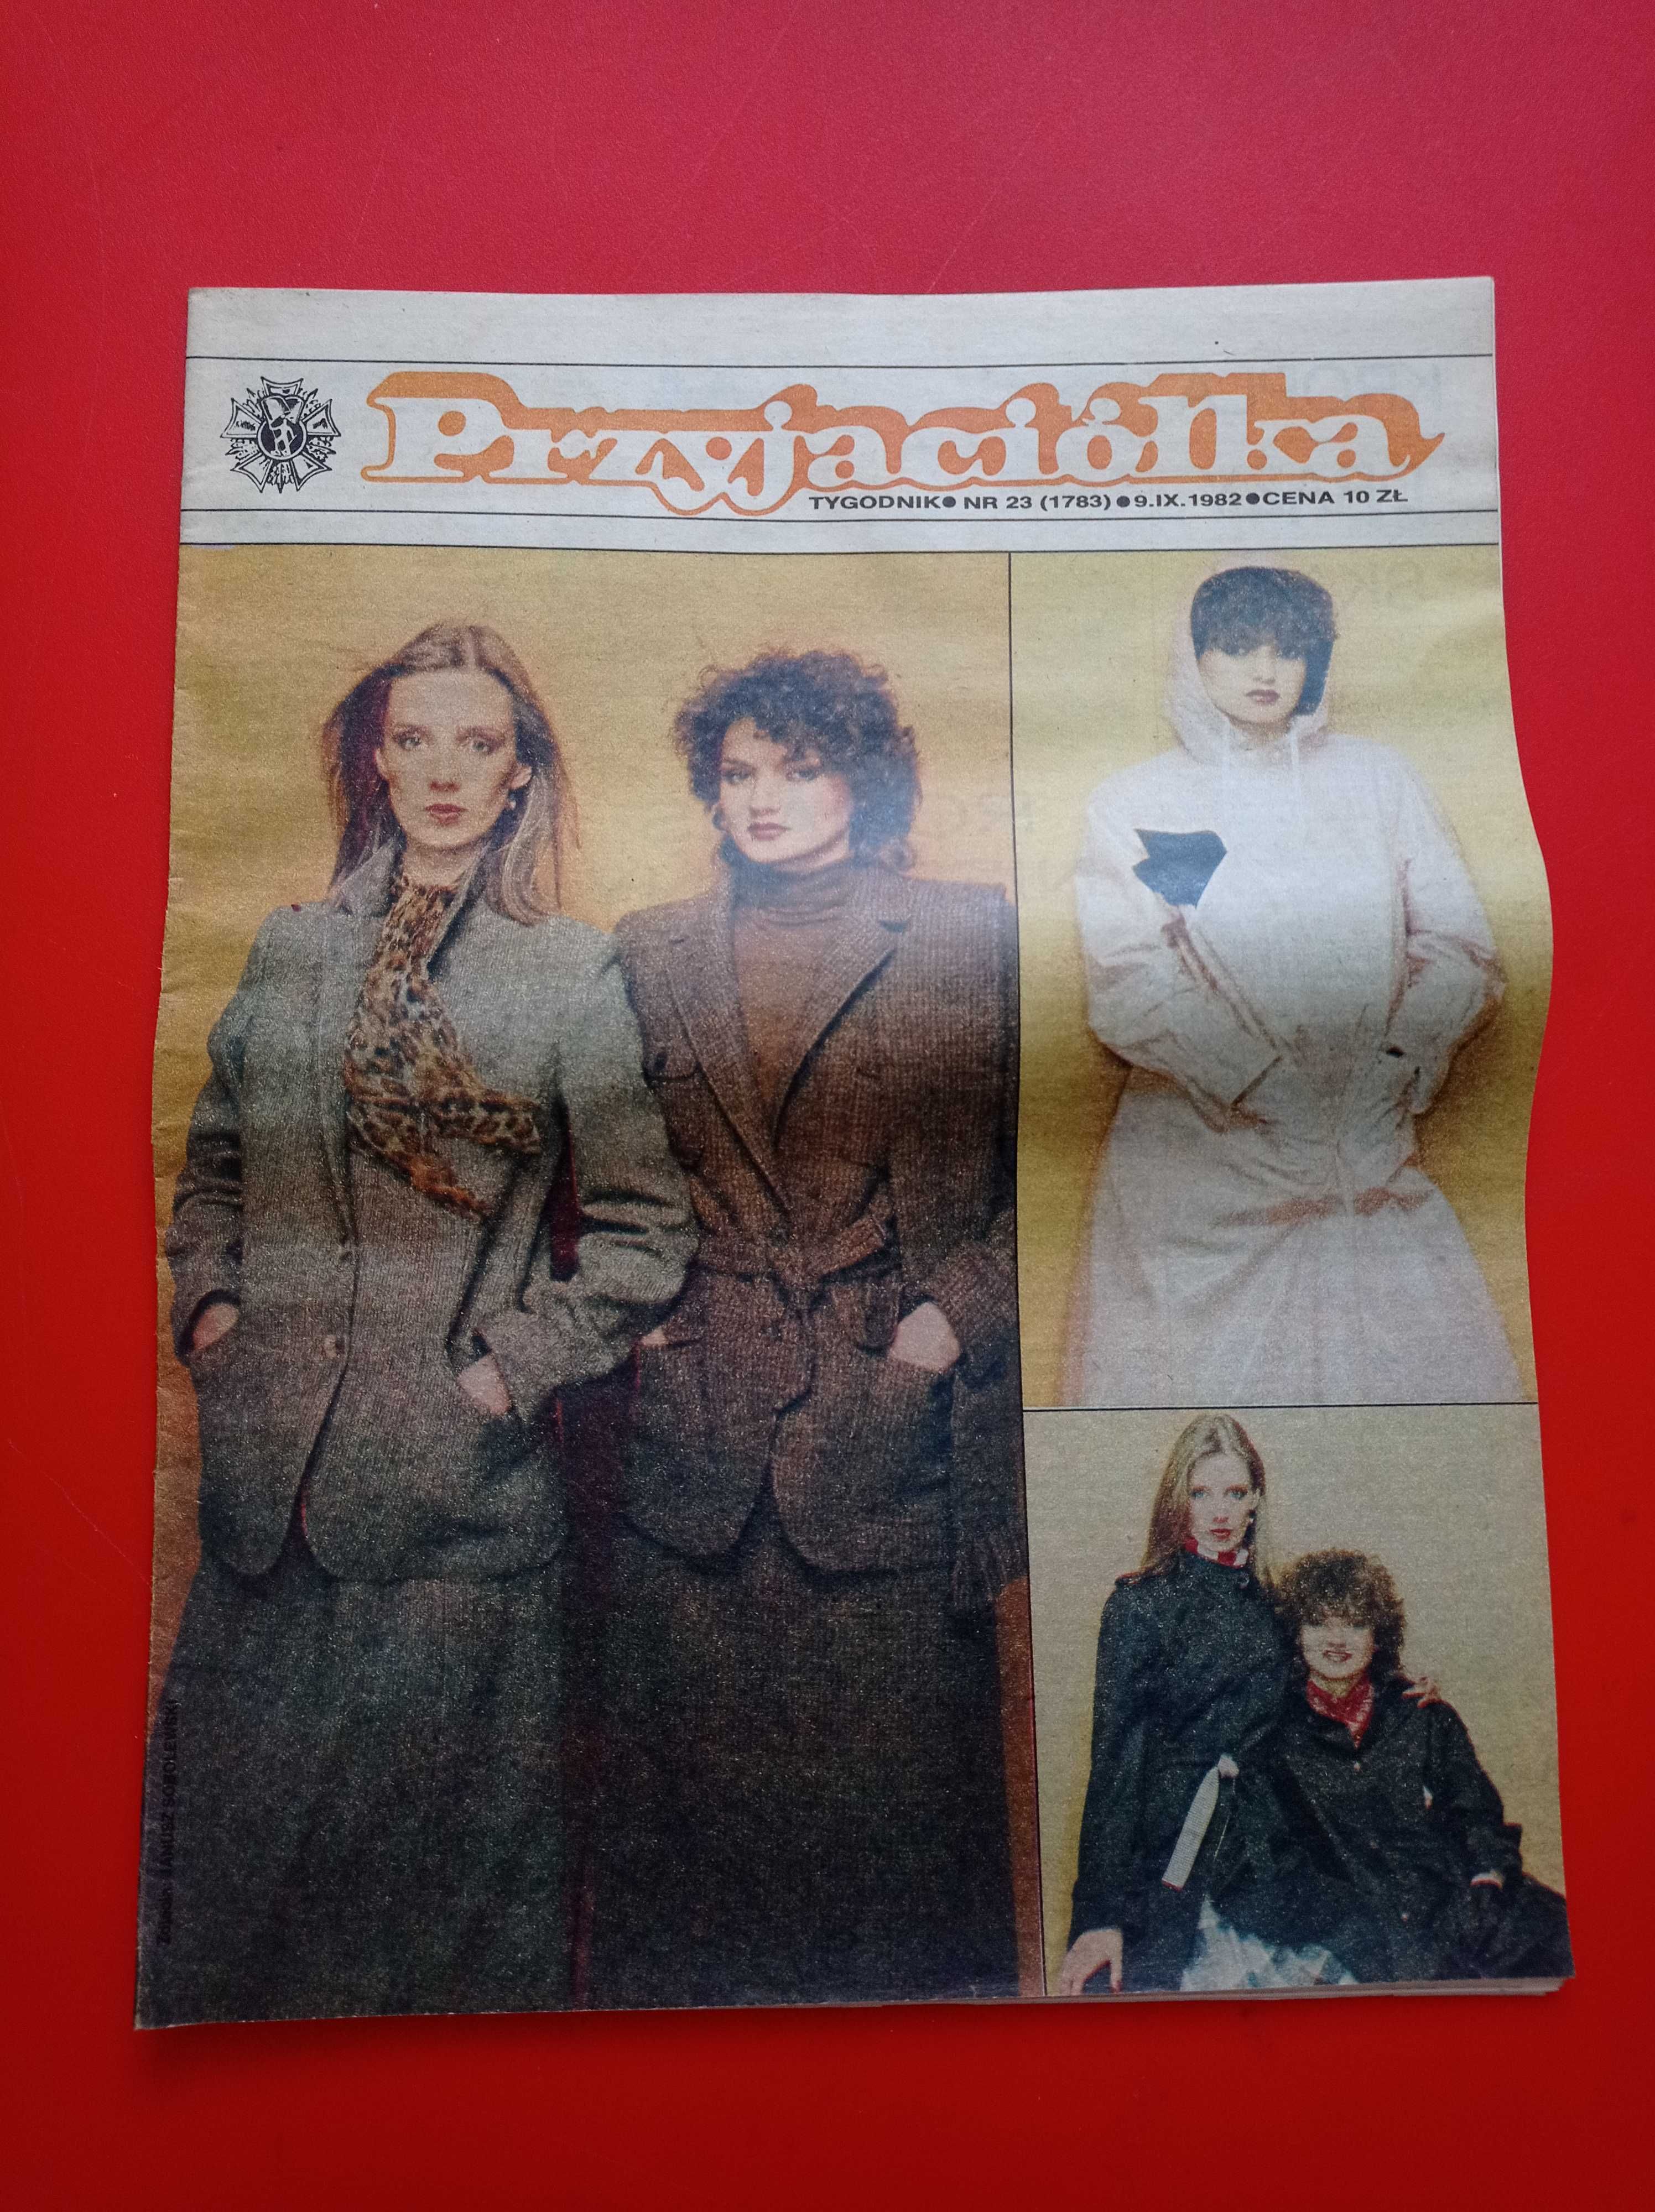 Przyjaciółka tygodnik, nr 23, 9 września 1982